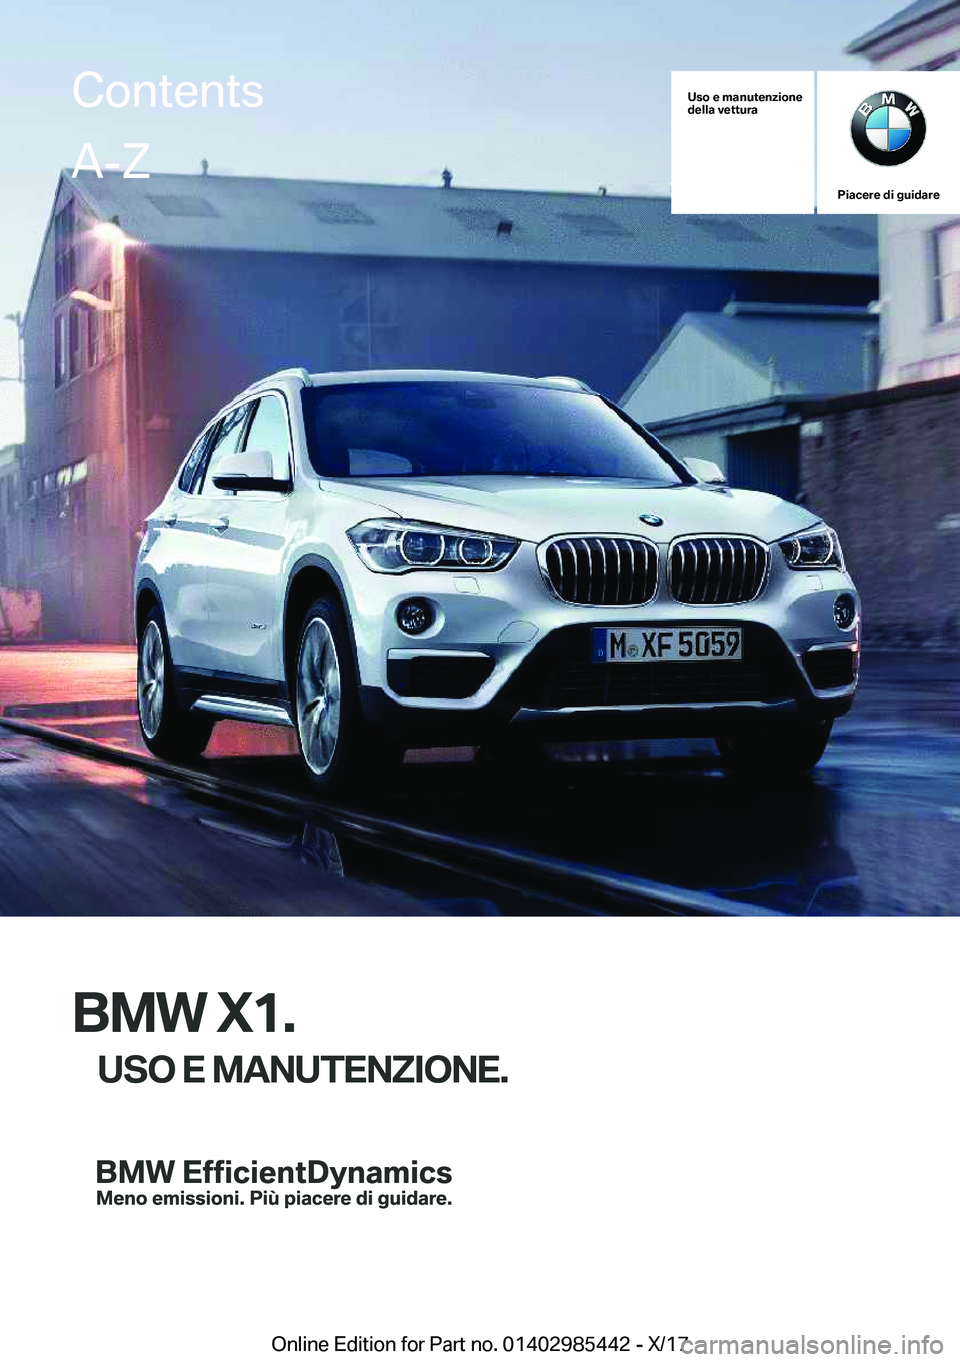 BMW X1 2018  Libretti Di Uso E manutenzione (in Italian) �U�s�o��e��m�a�n�u�t�e�n�z�i�o�n�e
�d�e�l�l�a��v�e�t�t�u�r�a
�P�i�a�c�e�r�e��d�i��g�u�i�d�a�r�e
�B�M�W��X�1�.
�U�S�O��E��M�A�N�U�T�E�N�Z�I�O�N�E�.
�C�o�n�t�e�n�t�s�A�-�Z
�O�n�l�i�n�e� �E�d�i�t